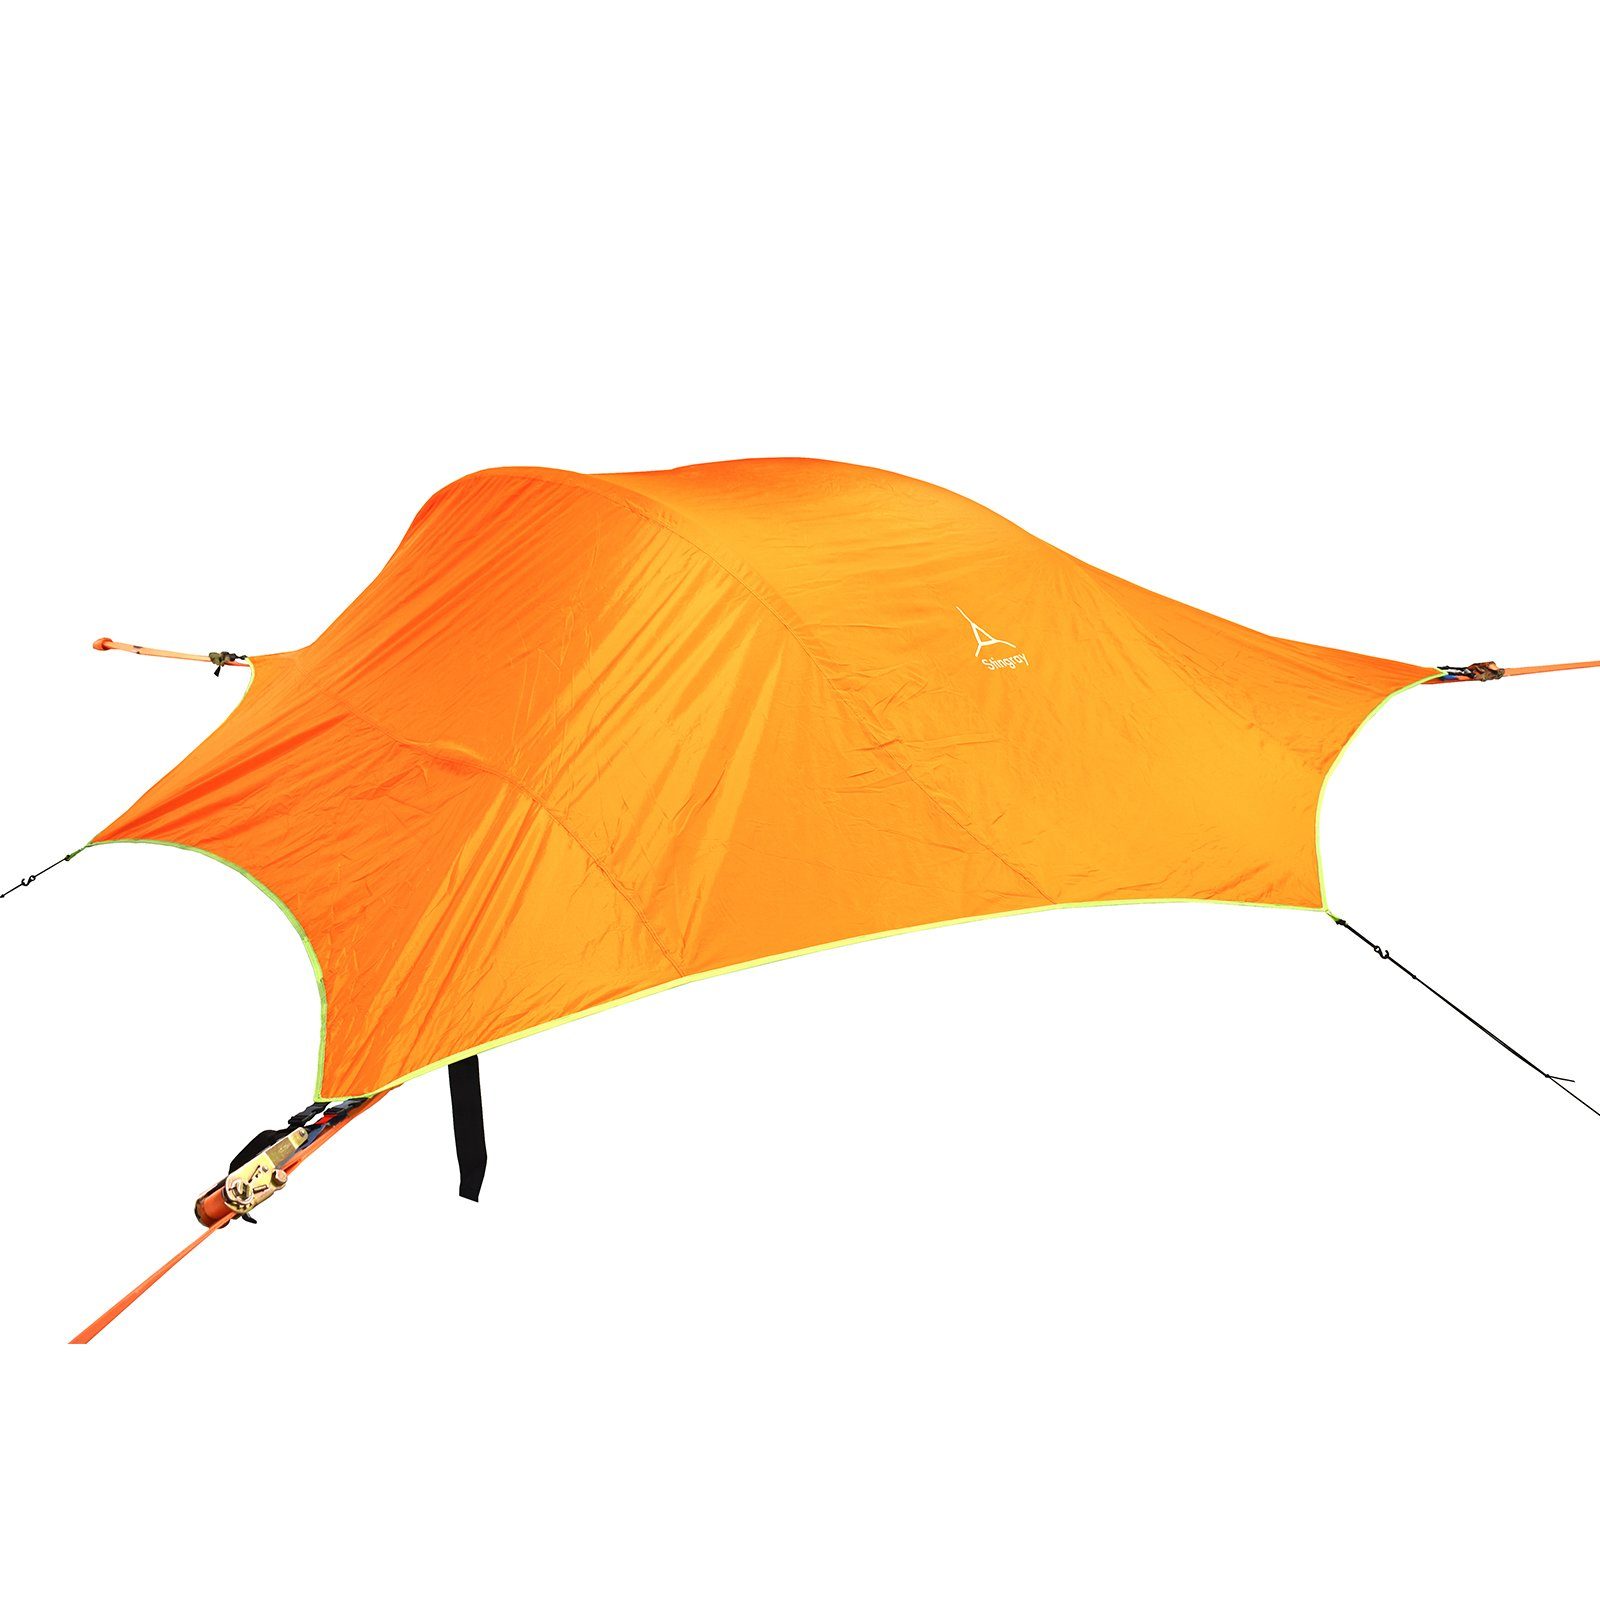 Hänge 2-3 Flug Biwak Stingray Matte Personen, 3.0 Zelt Orange Hängezelt Trekking Tentsile Baumzelt